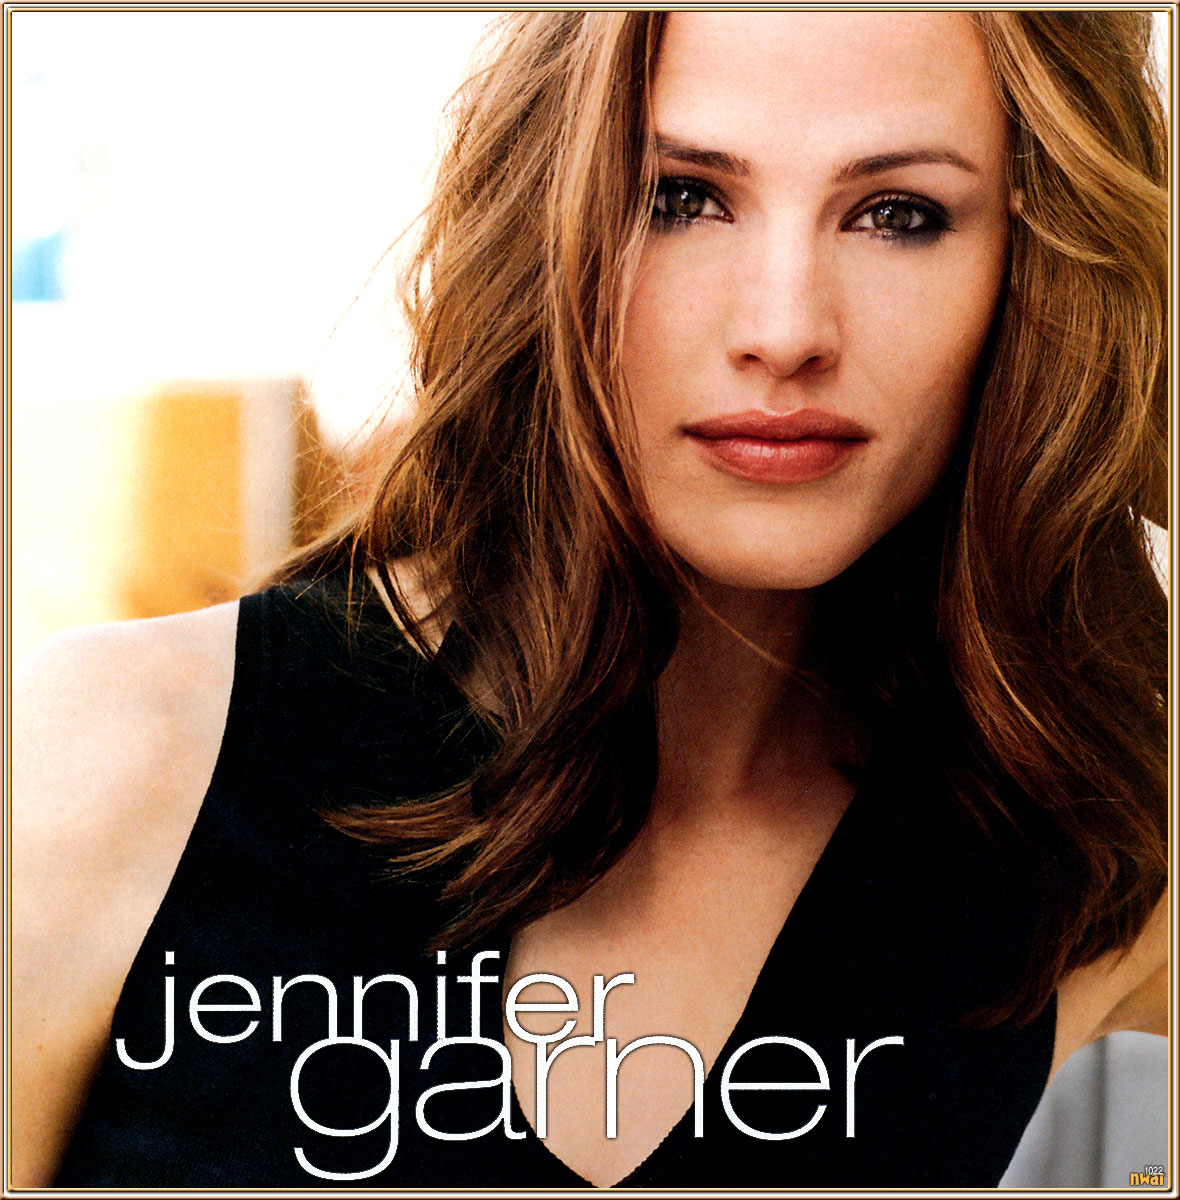   ^ Jennifer Garner